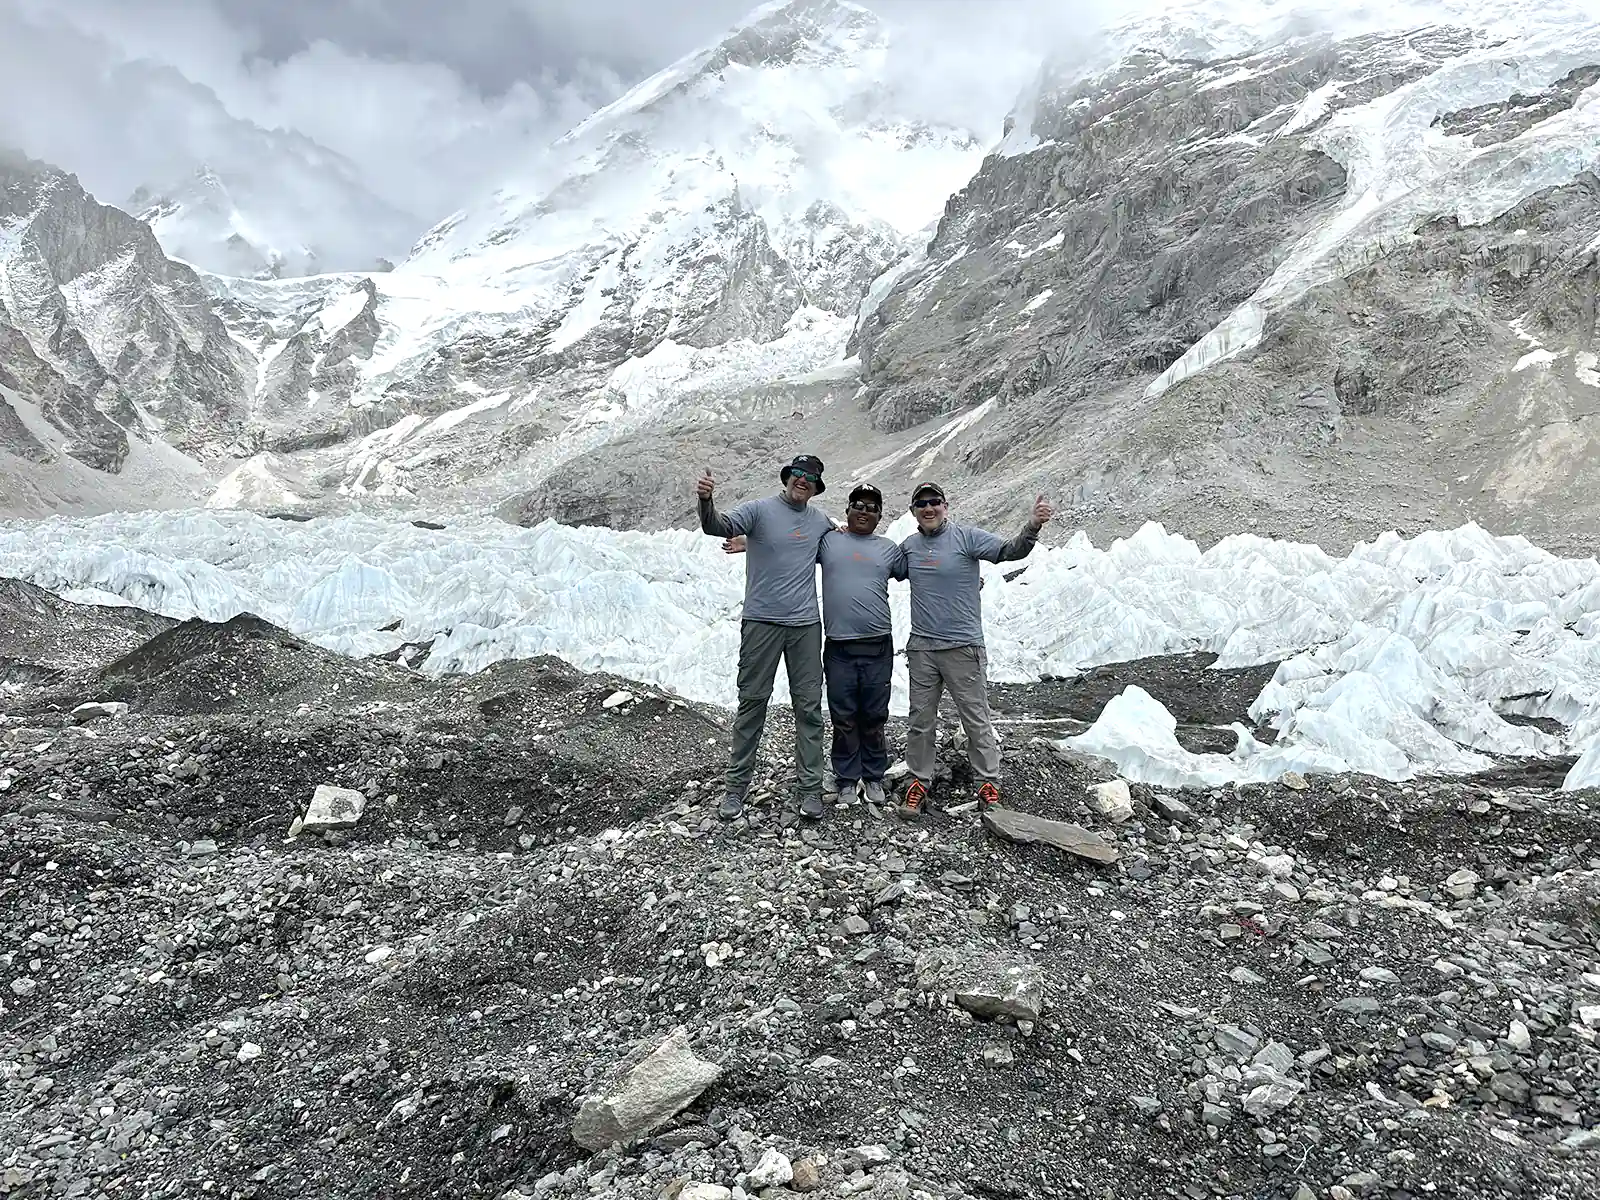 Khumbu Glacier - Everest Base Camp